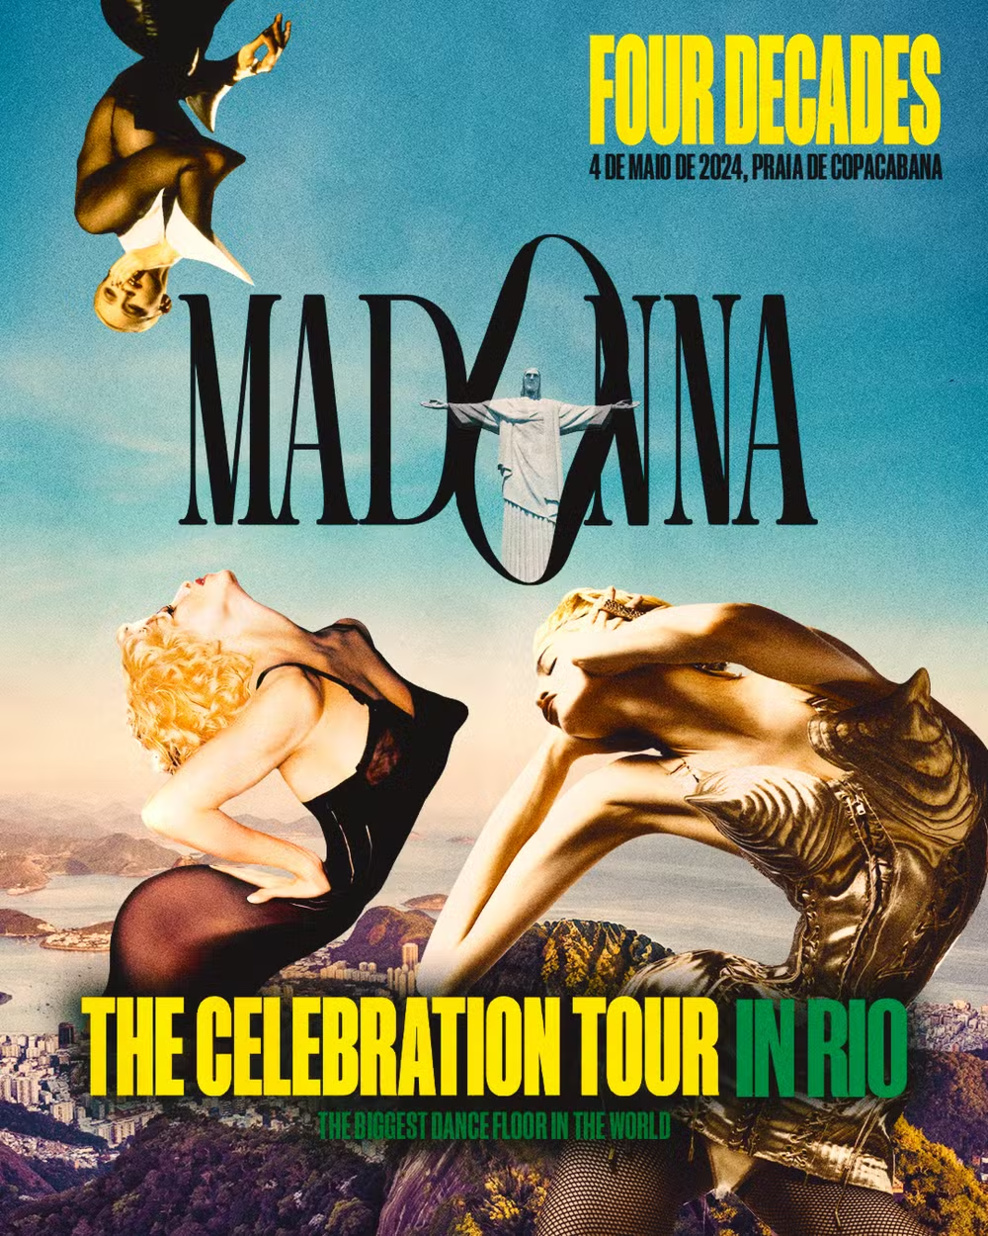 Affiche officielle promouvant l'événement - Madonna in Rio